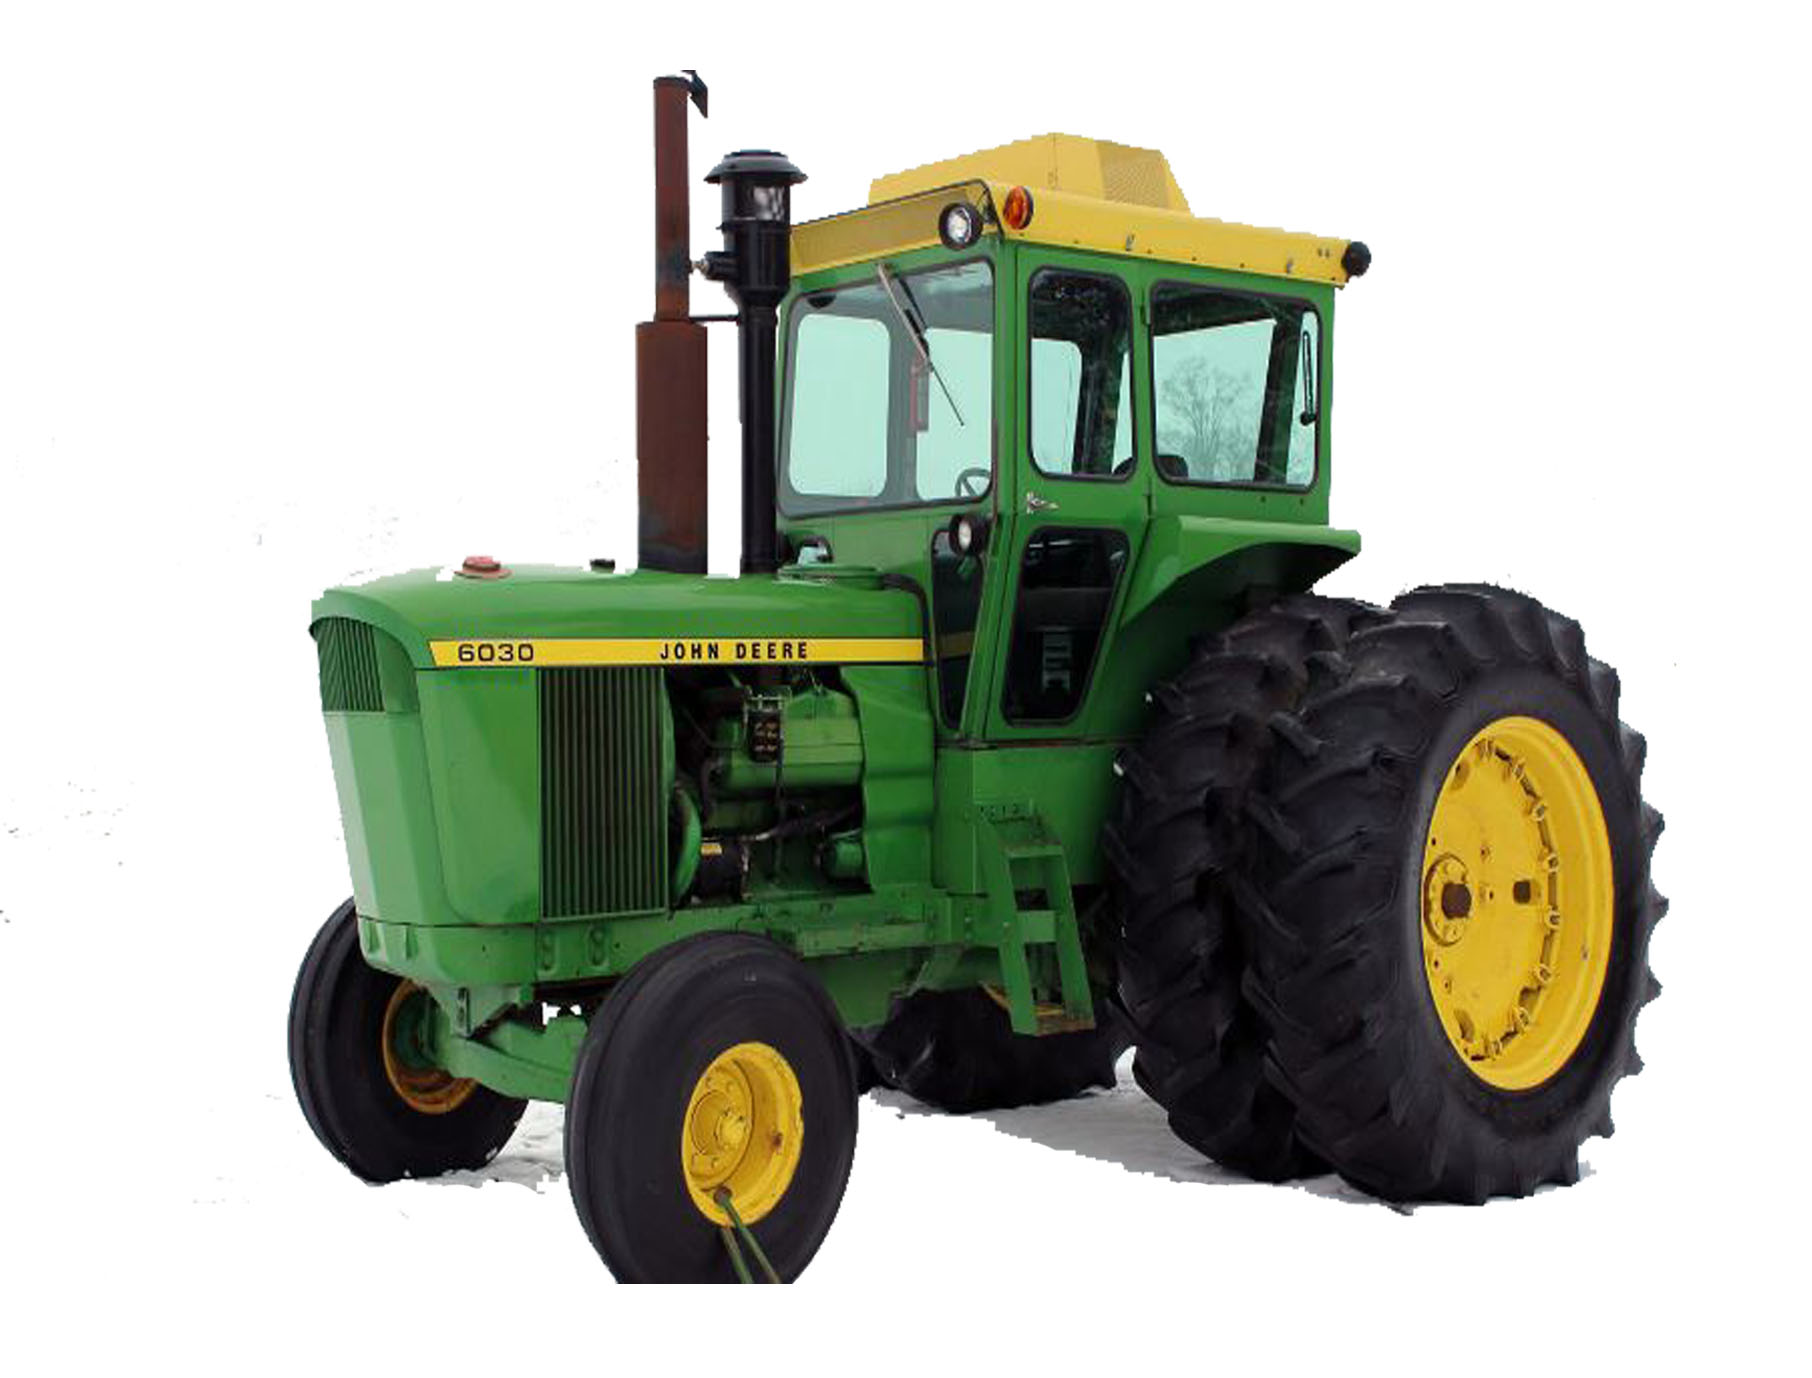 John Deere 6030 Tractor Price Specs